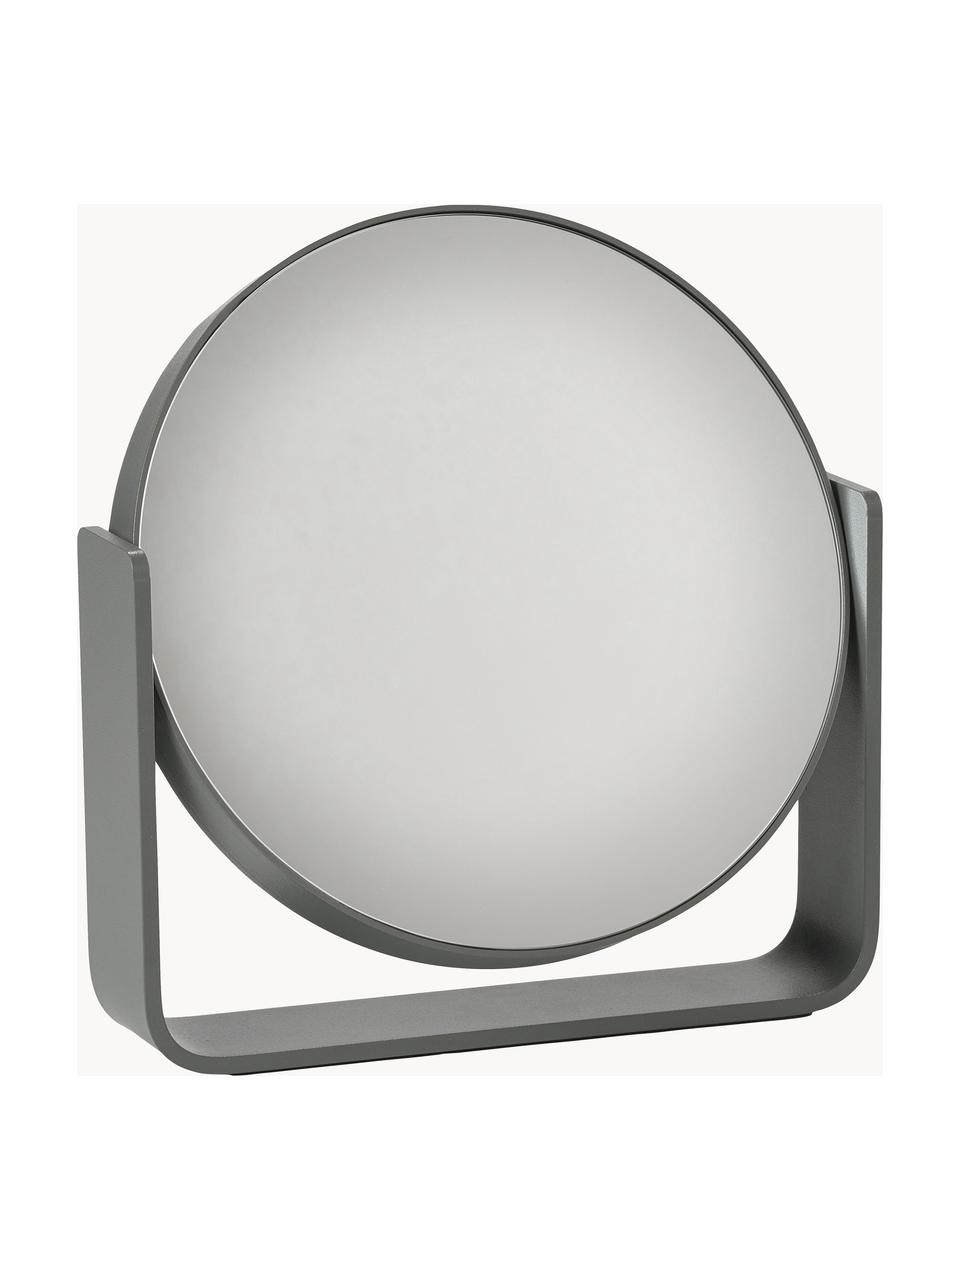 Runder Kosmetikspiegel Ume mit Vergrößerung, Dunkelgrau, B 19 x H 20 cm